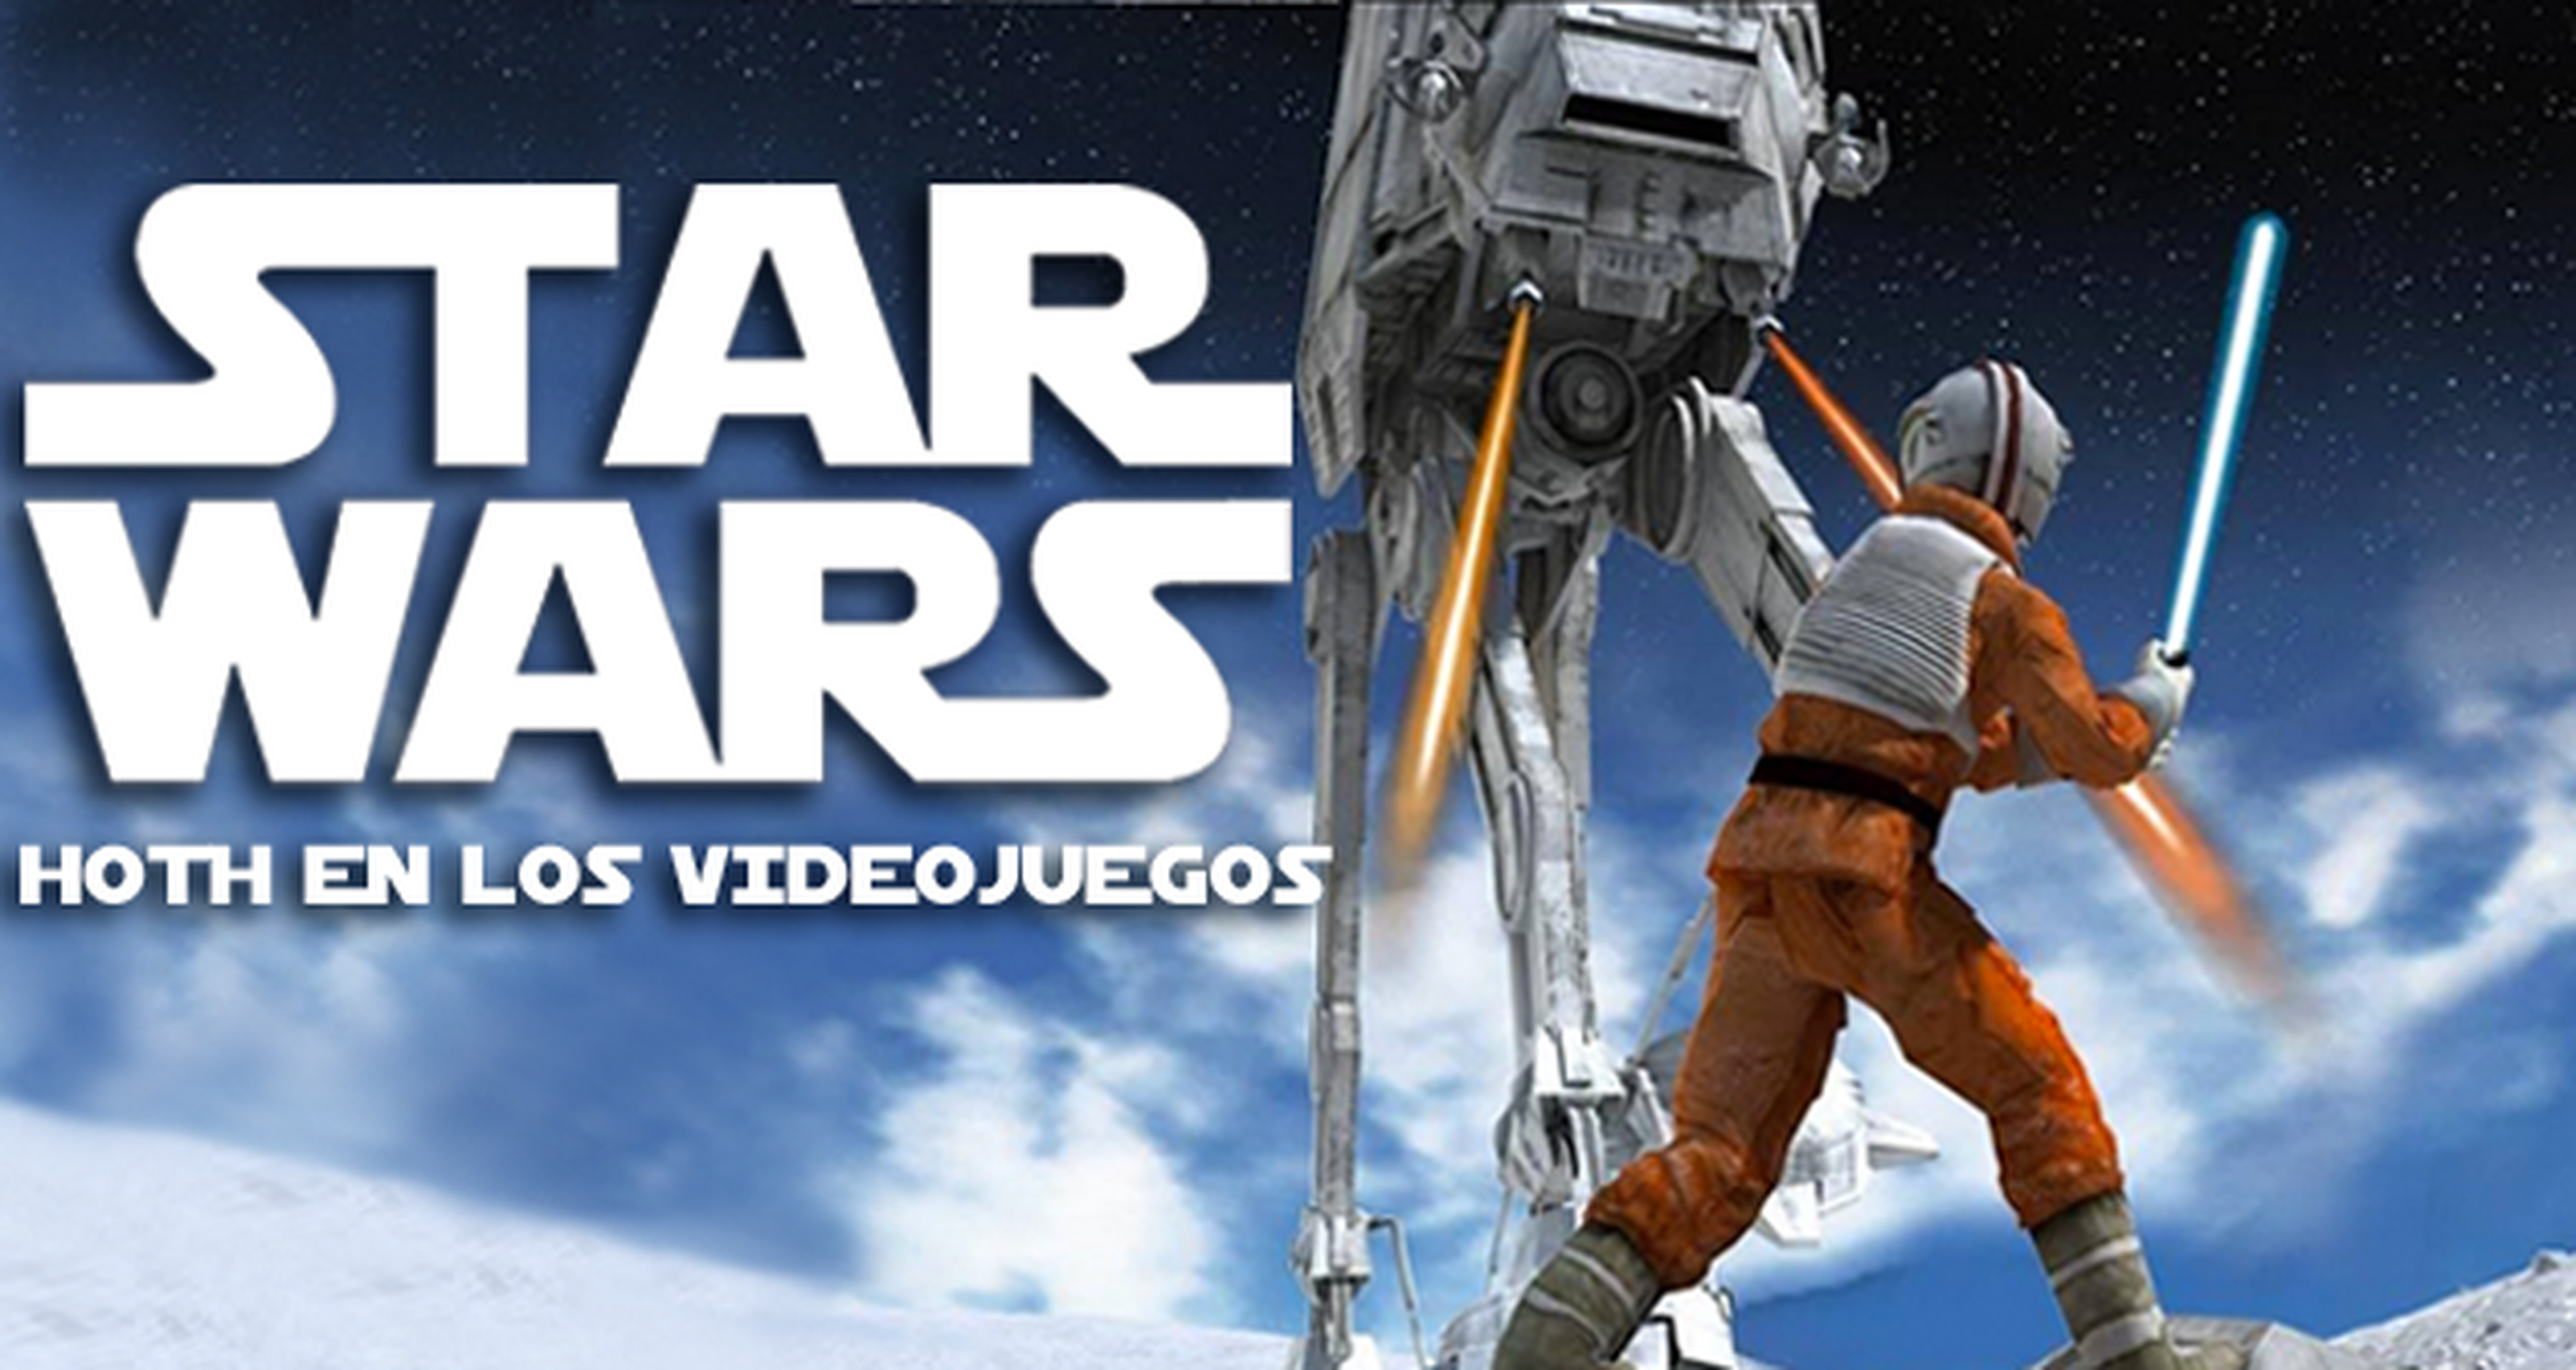 Star Wars: la batalla de Hoth en todos los videojuegos